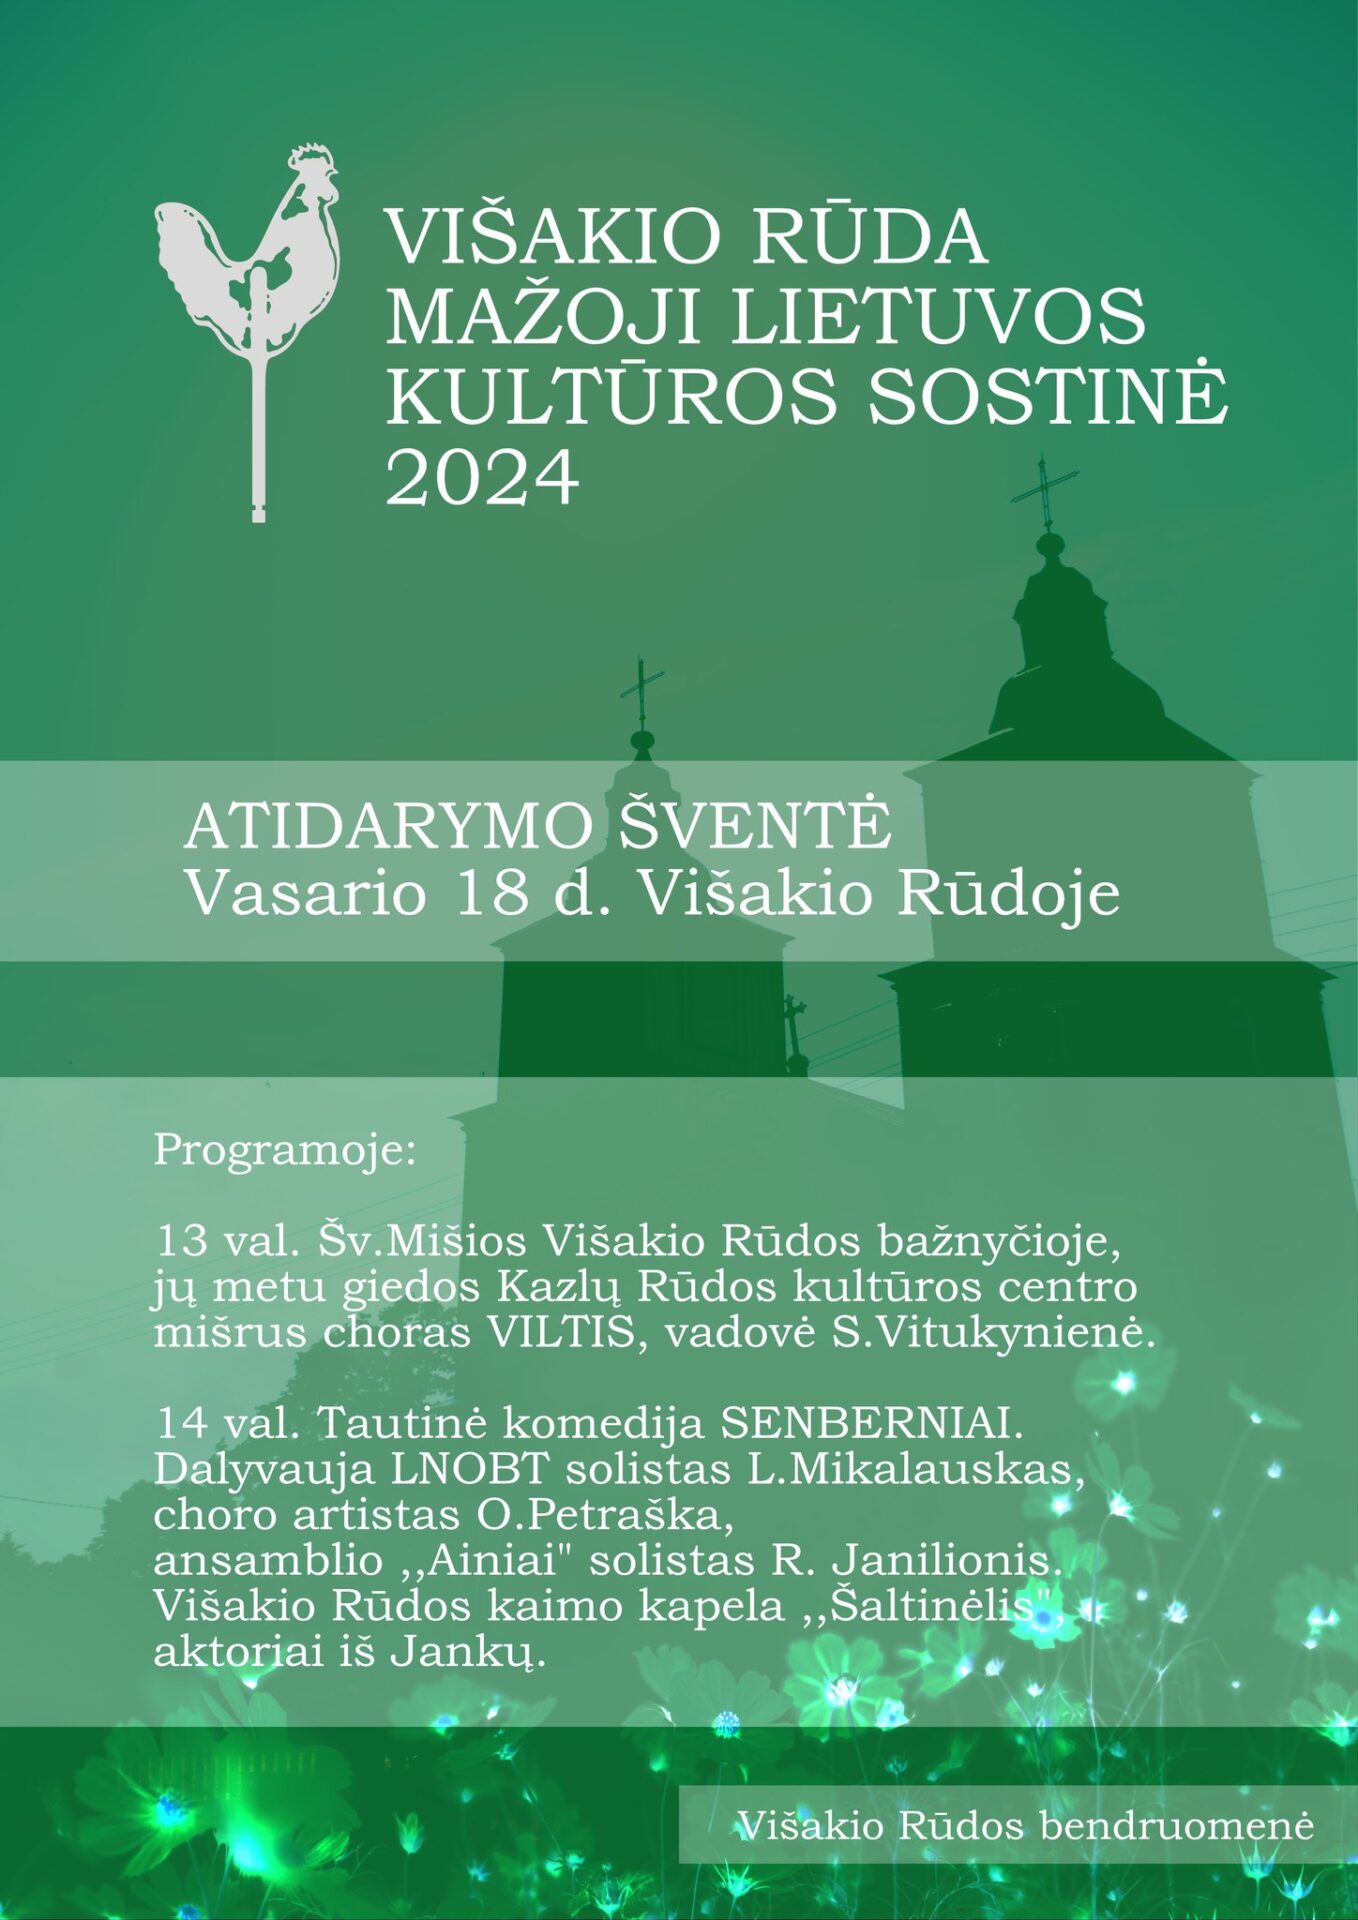 Mažosios Lietuvos kultūros sostinės 2024 atidarymas